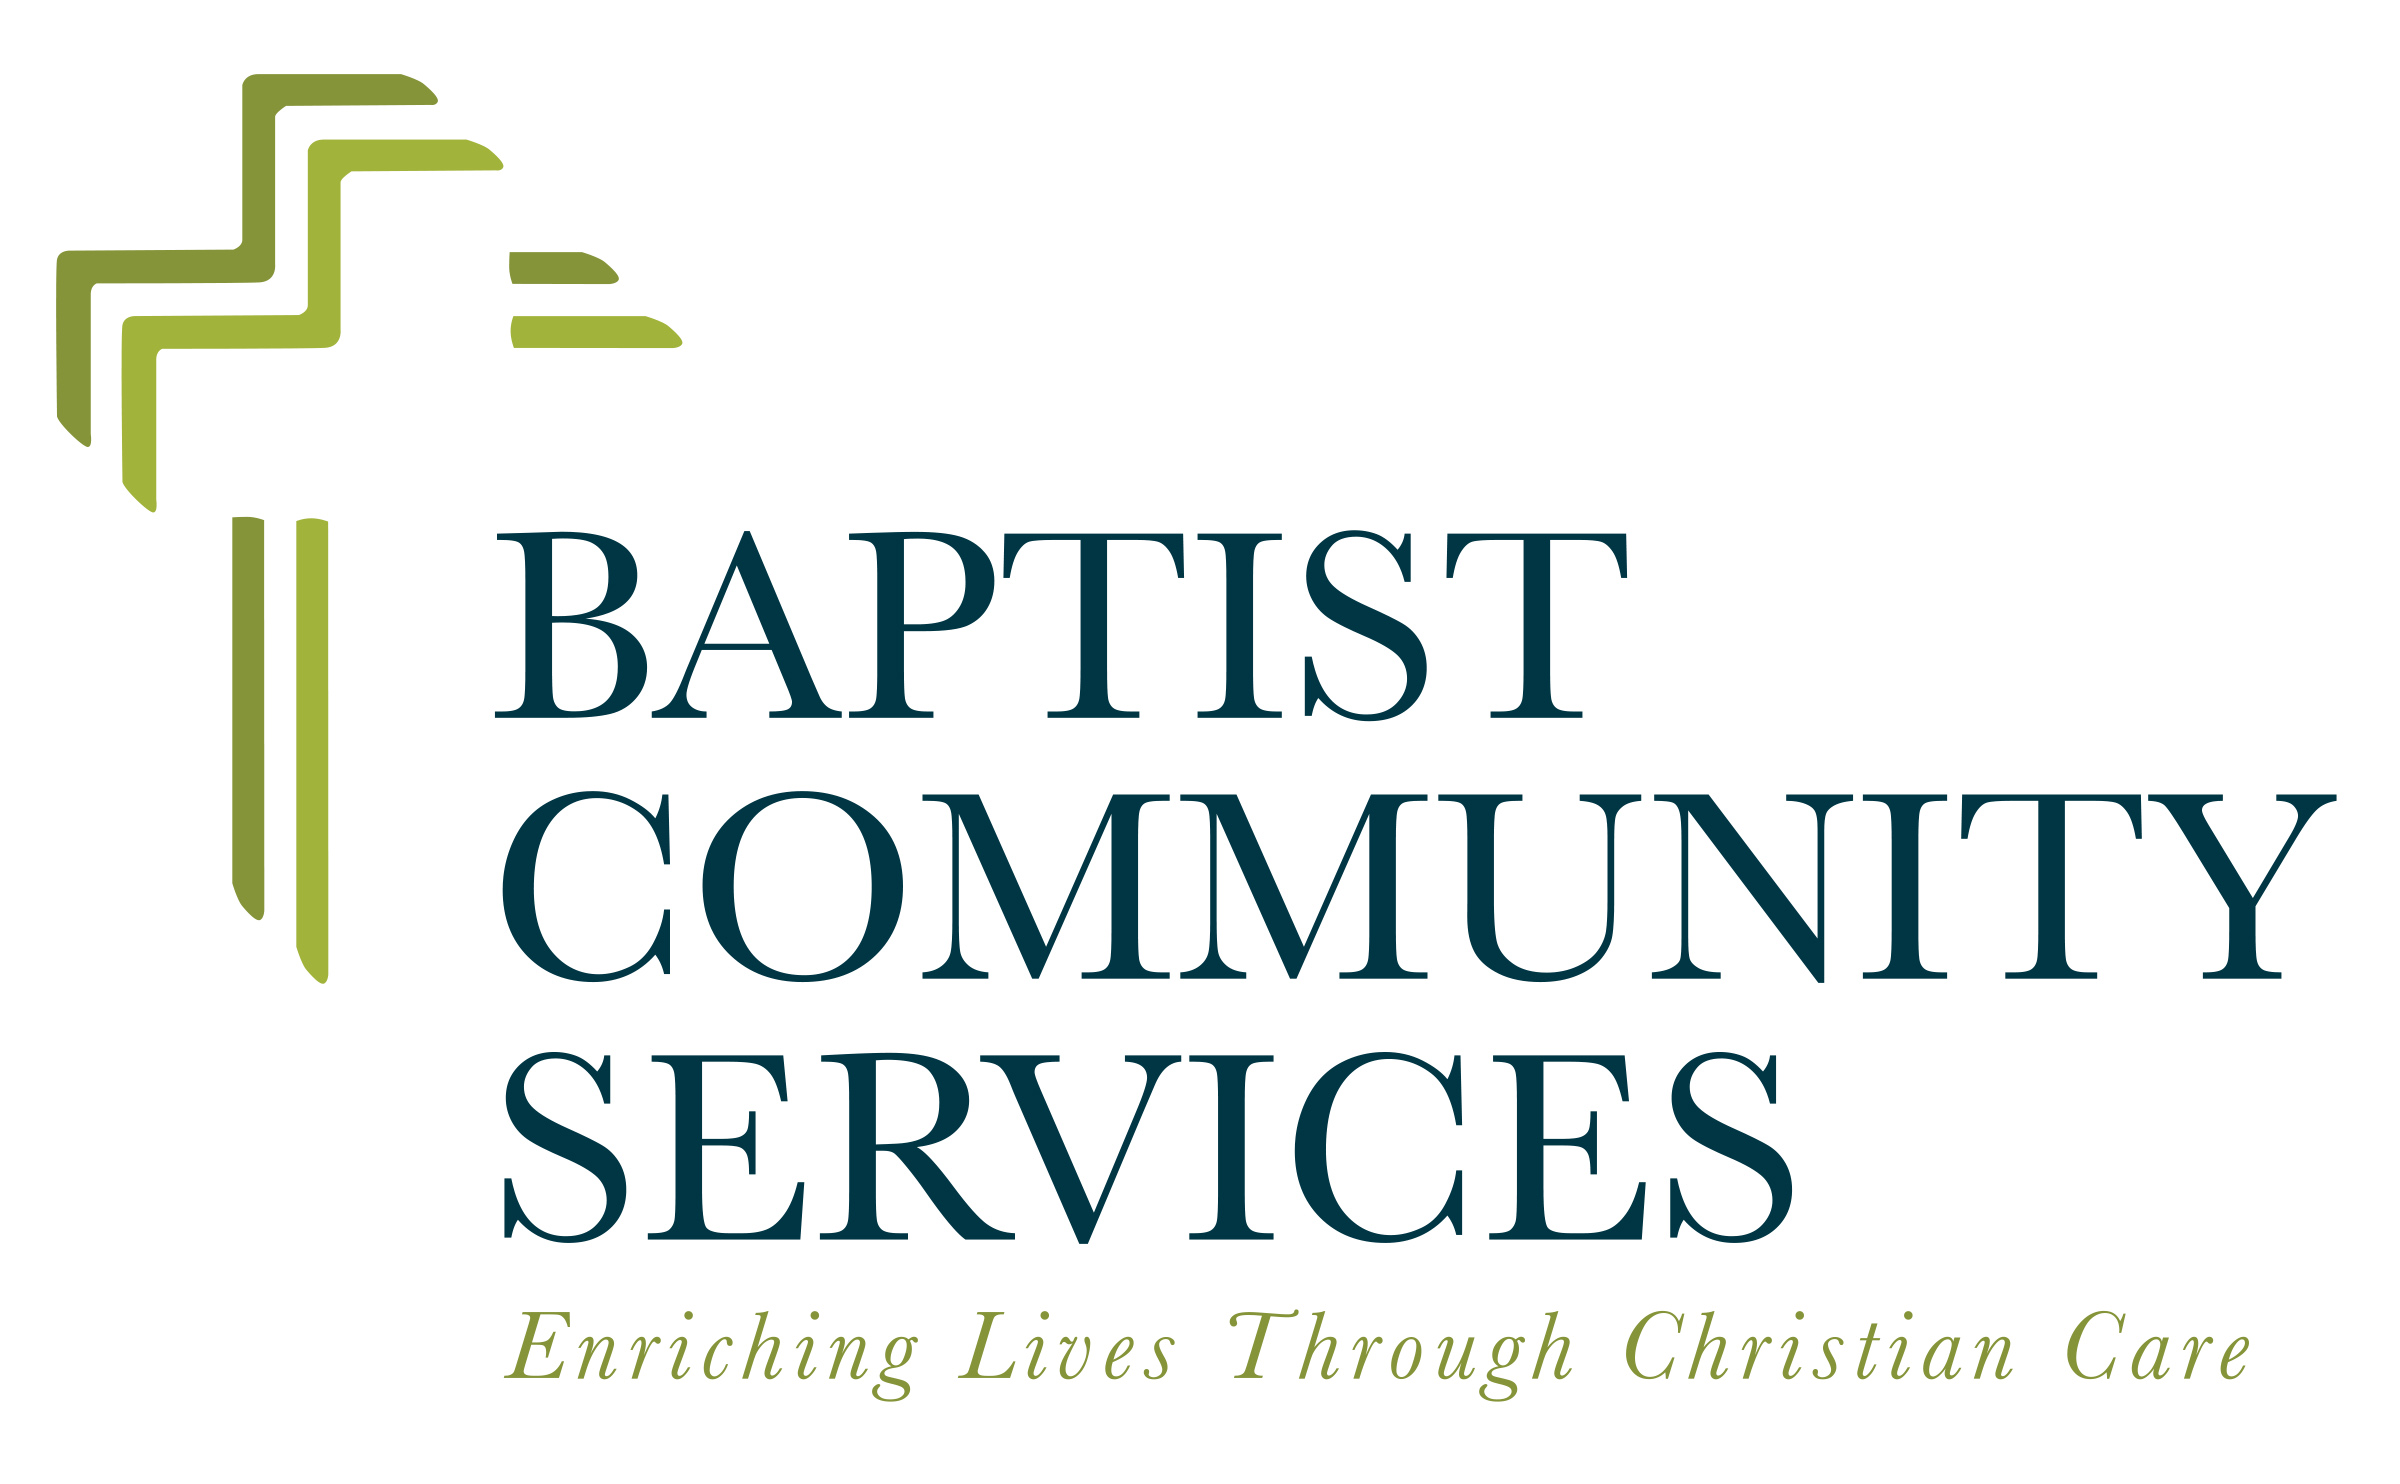 1A.Servicios comunitarios bautistas (Elite)